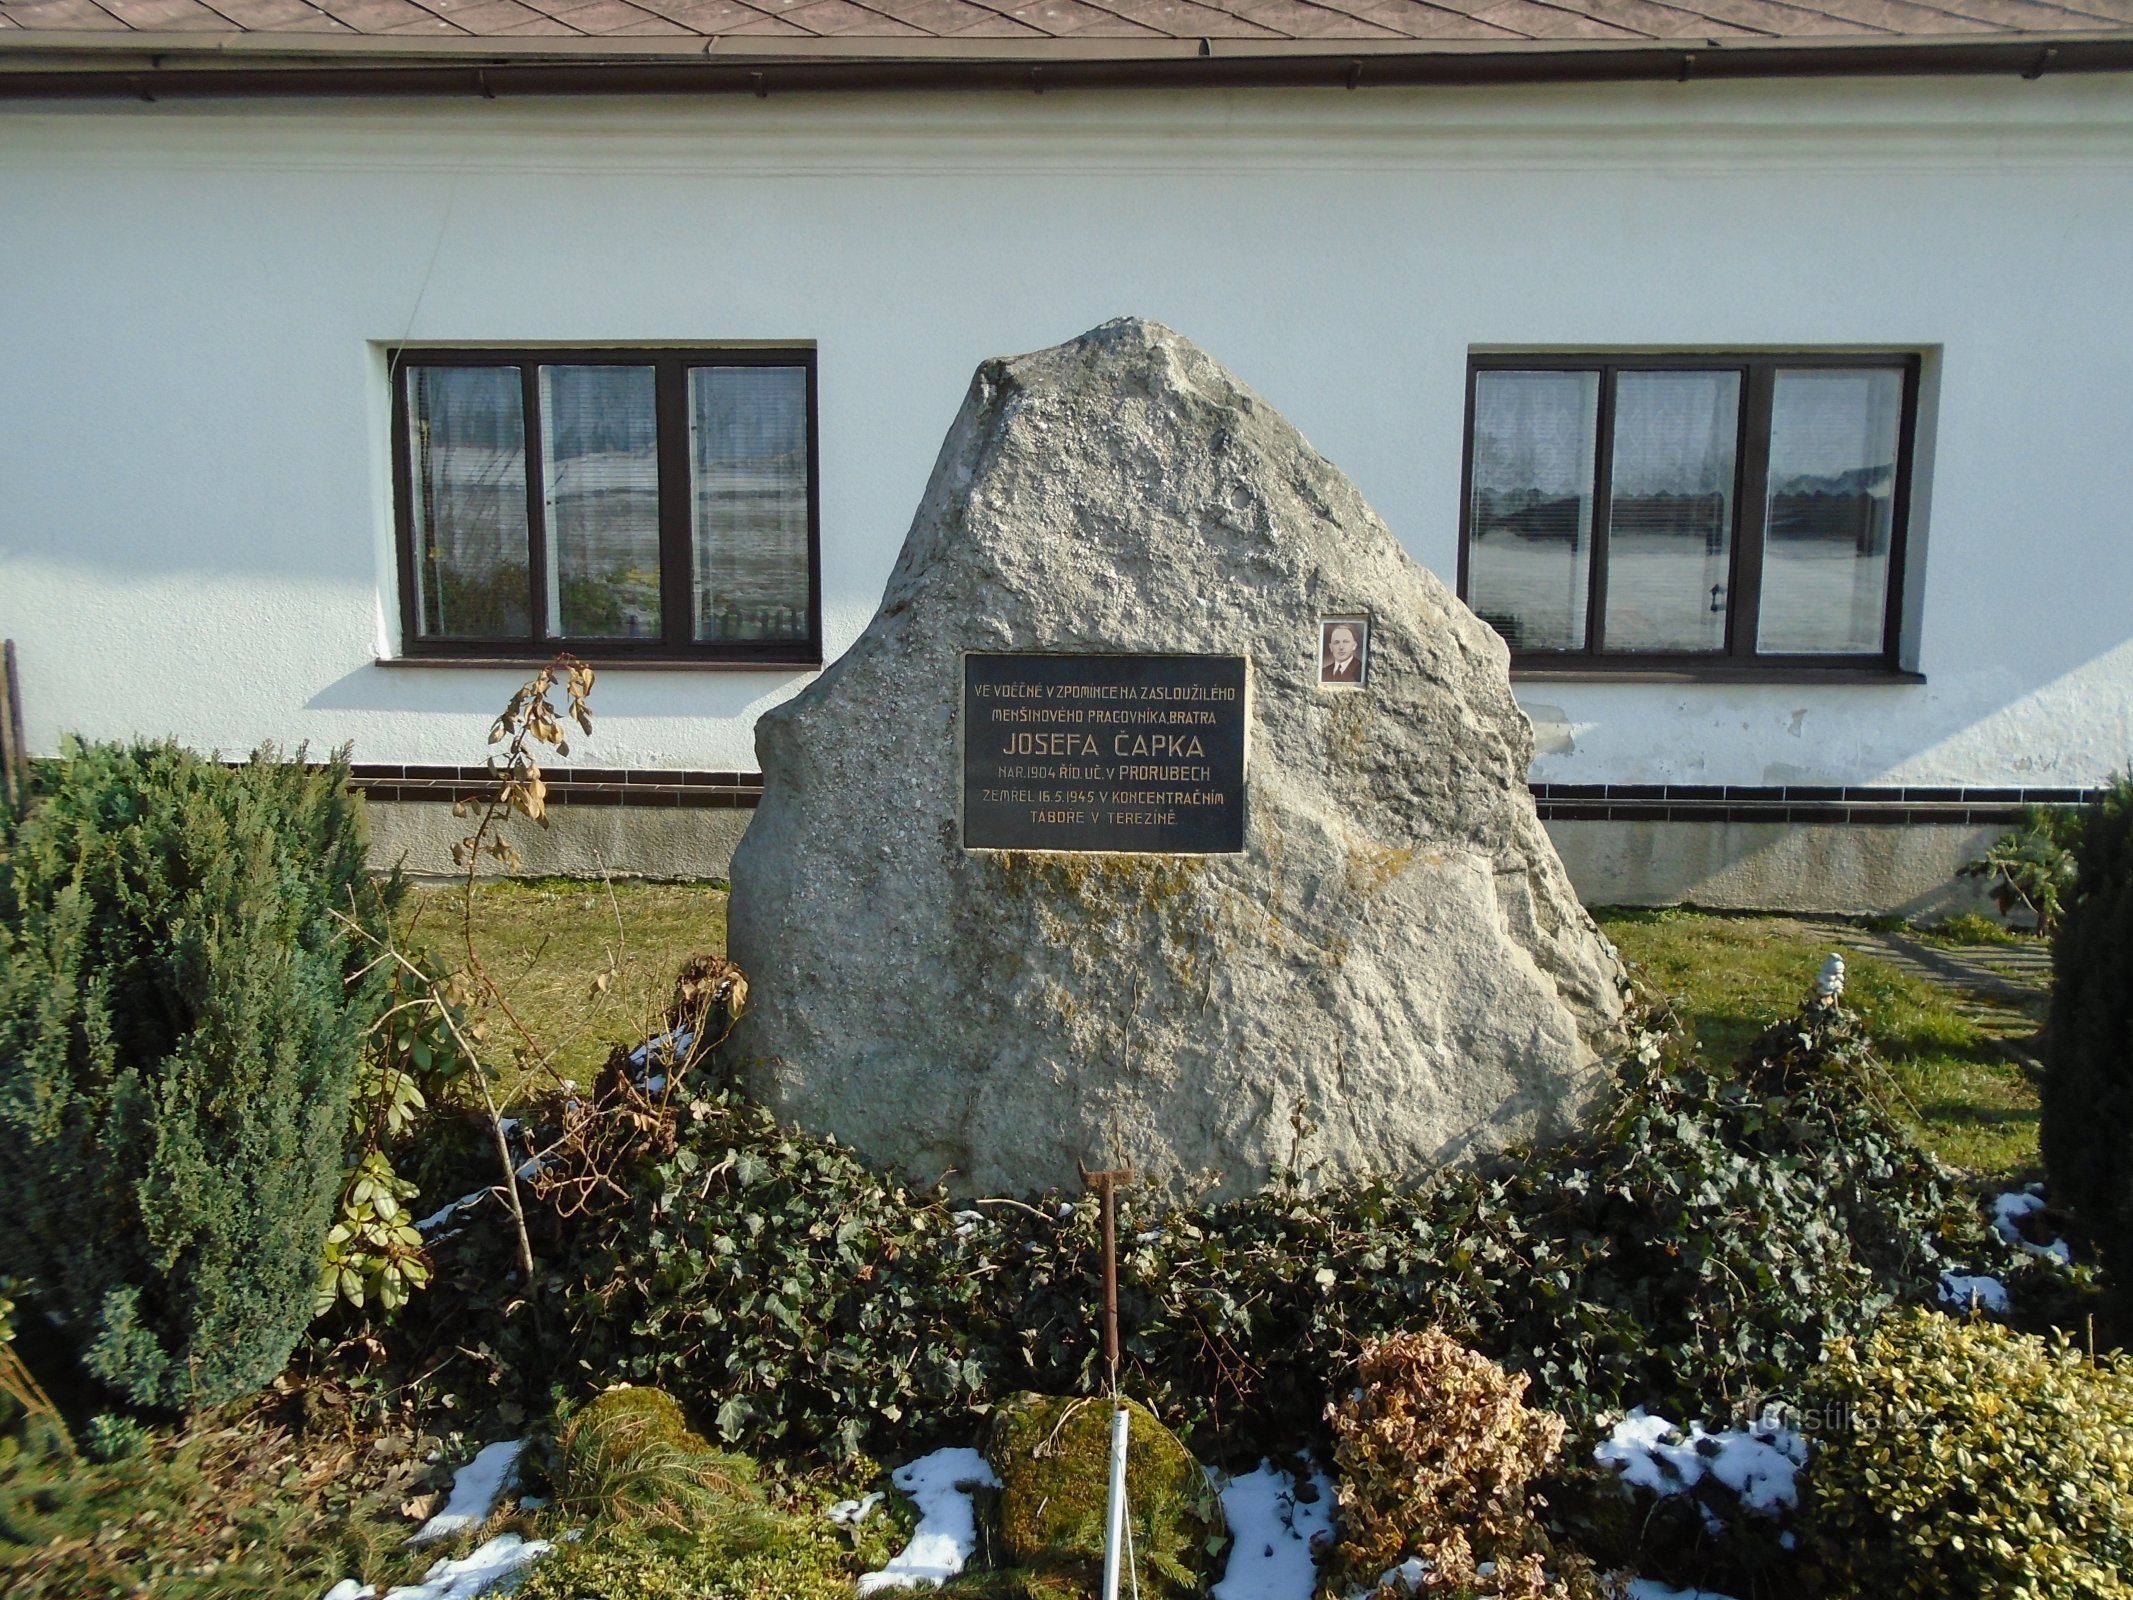 Pomnik J. Čapka przed nr 24 (Curuby)